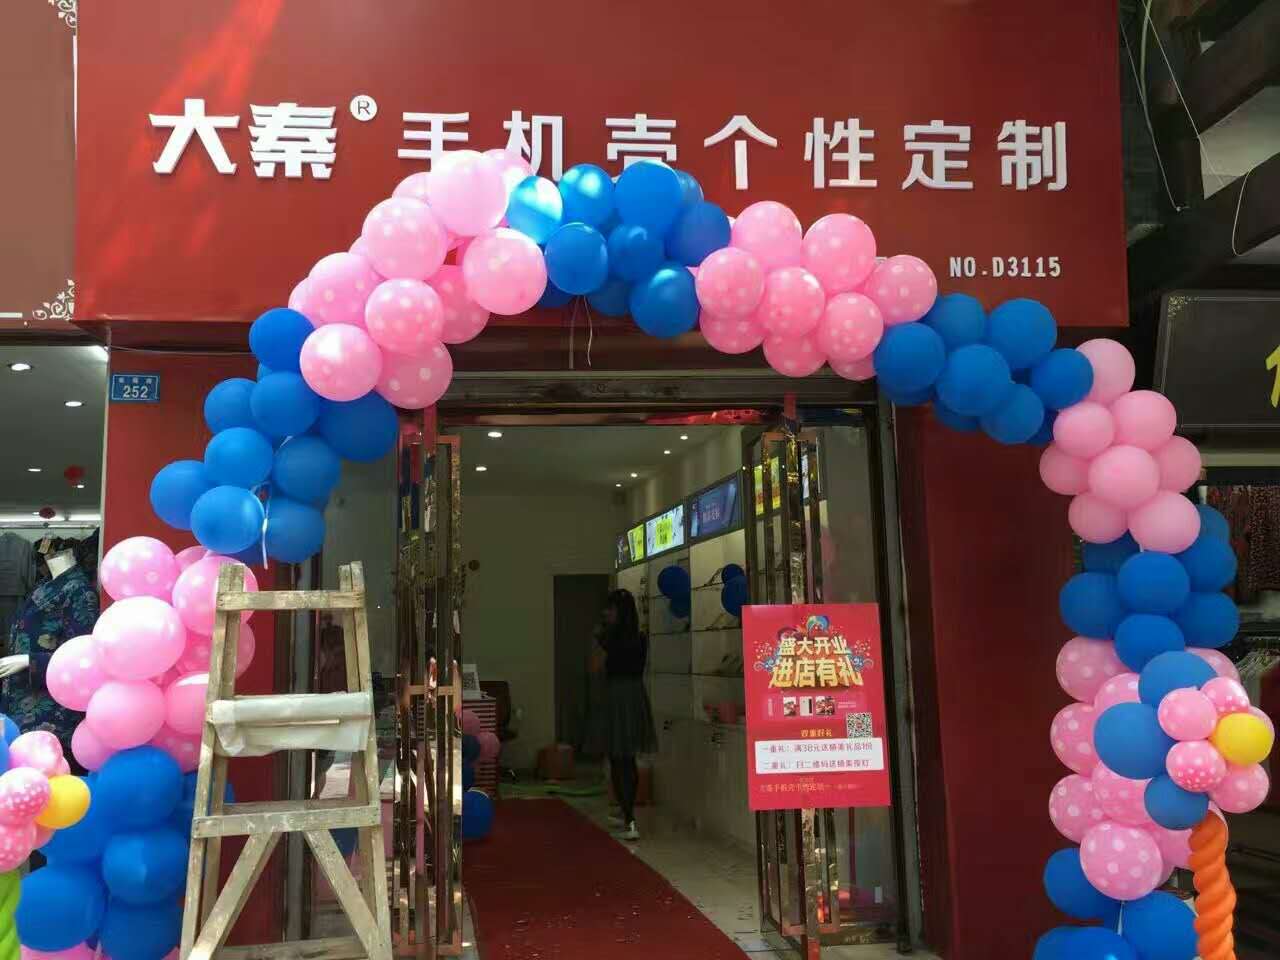 大秦手机美容店